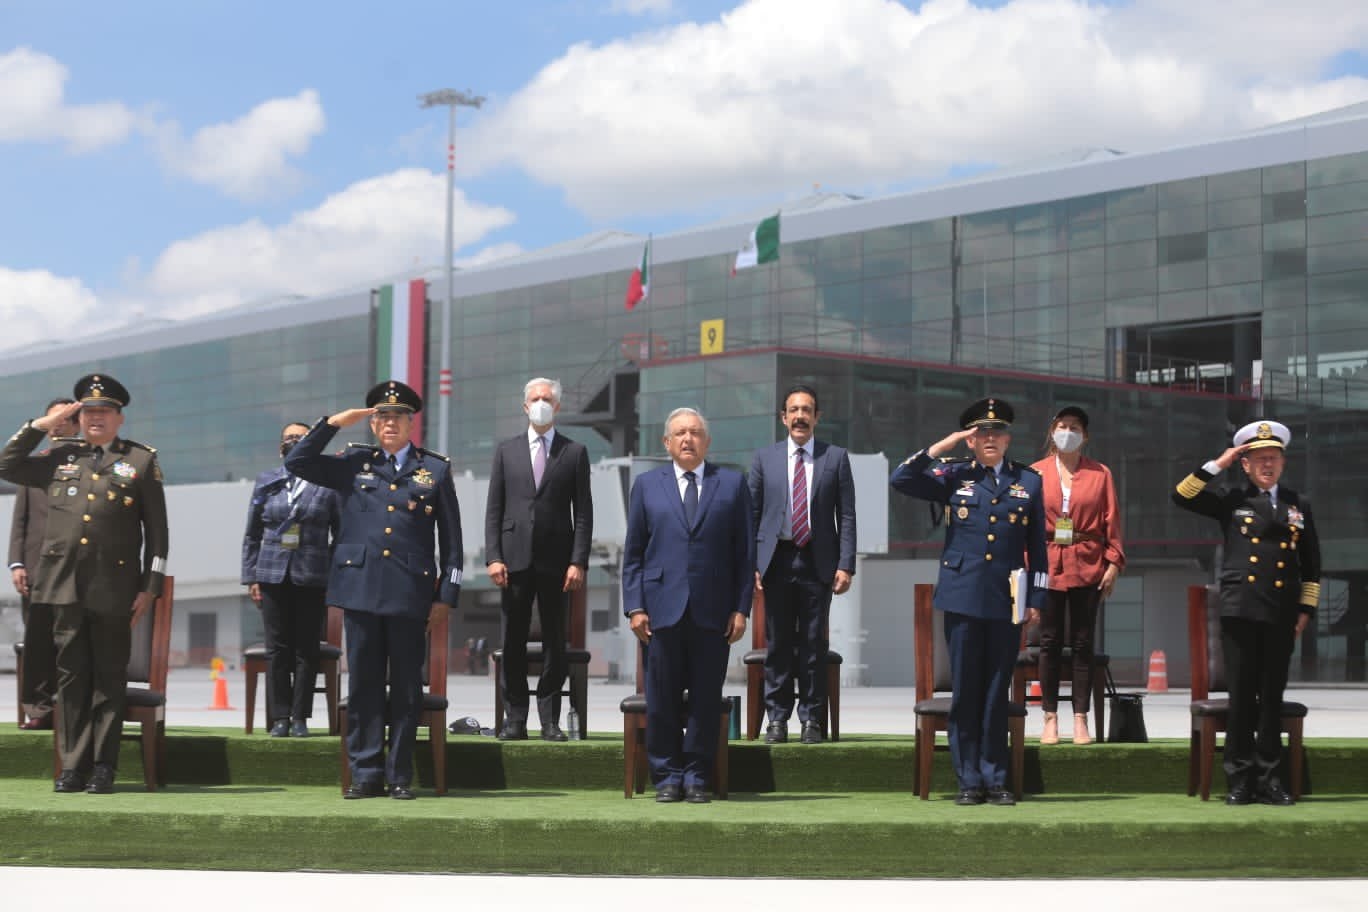 El presidente Andrés Manuel López Obrador inauguró la Feria Aeroespacial México 2021 que durará del 22 al 25 de septiembre de 2021